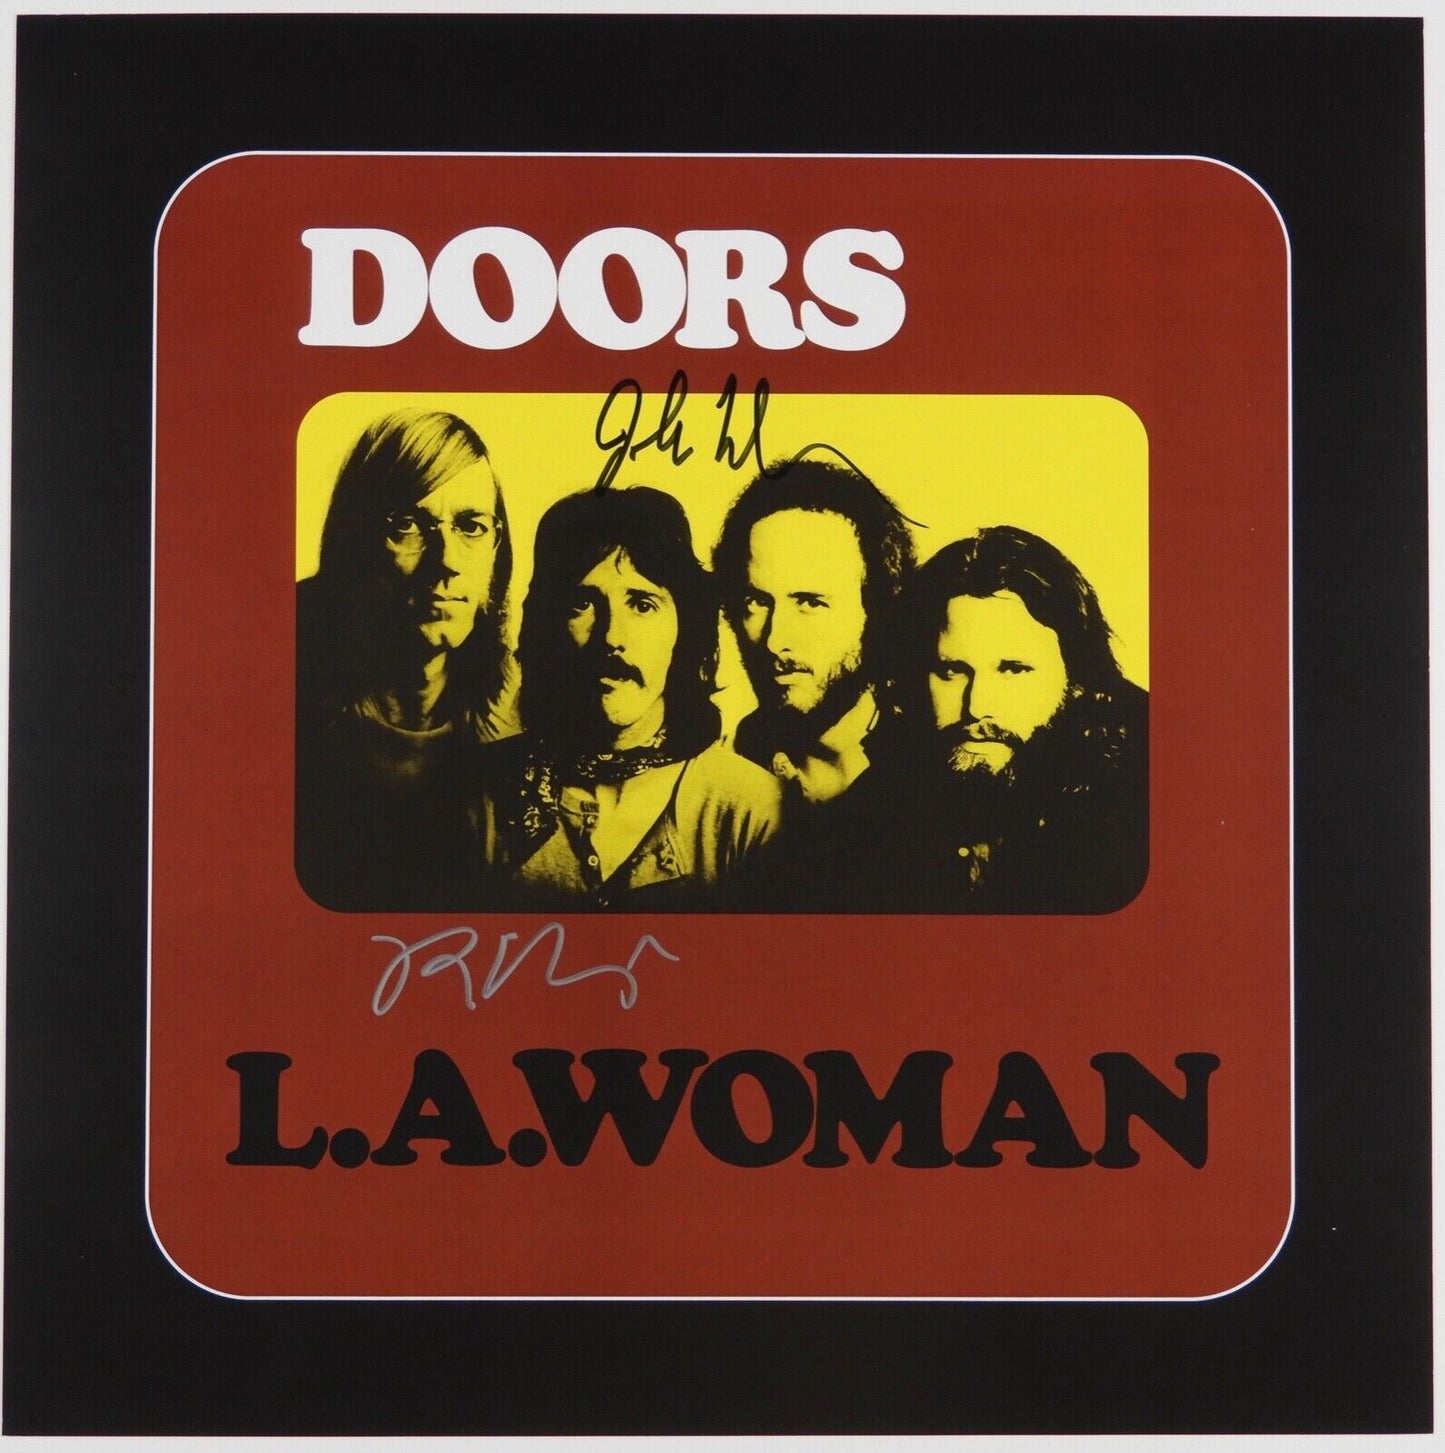 The Doors JSA Signed Autograph Album Vinyl Record LA Woman 50th Anniversary